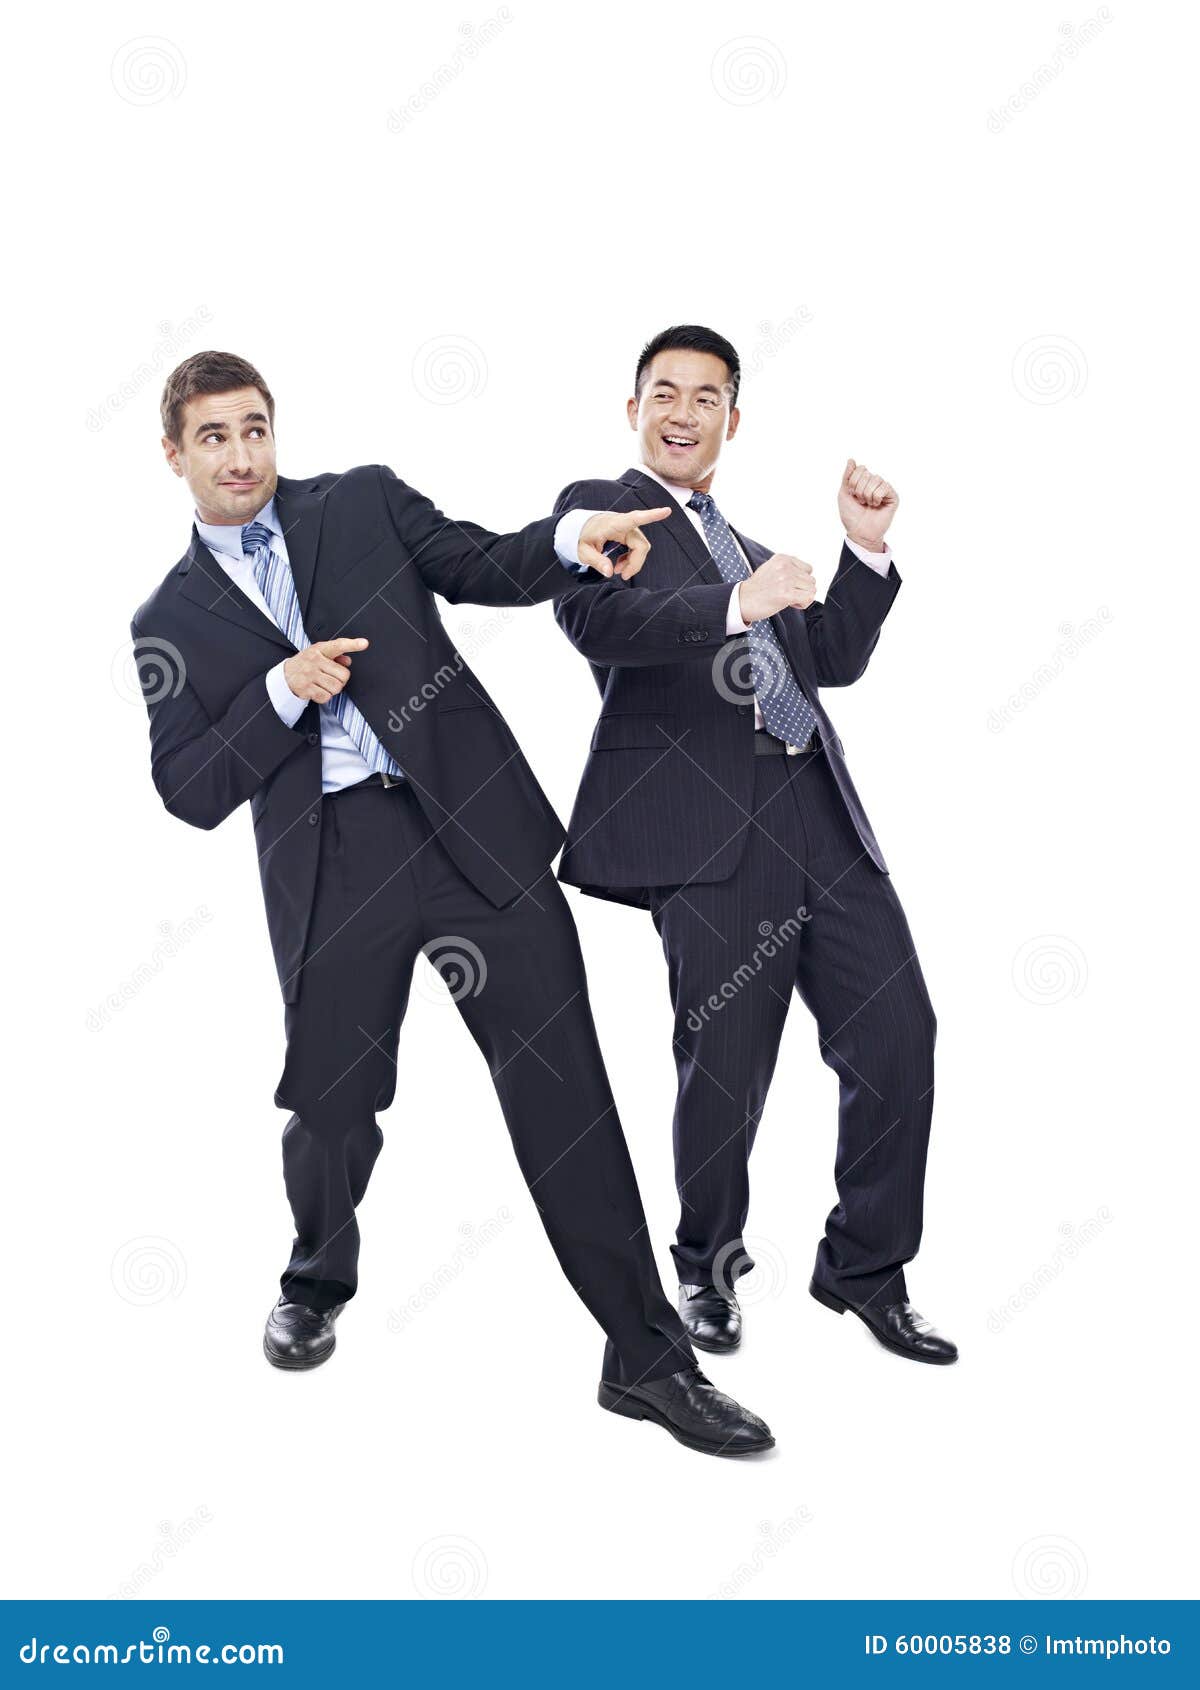 Бизнесмены танцевать. 2 счастливых бизнесмена танцевать, изолированный на белой предпосылке